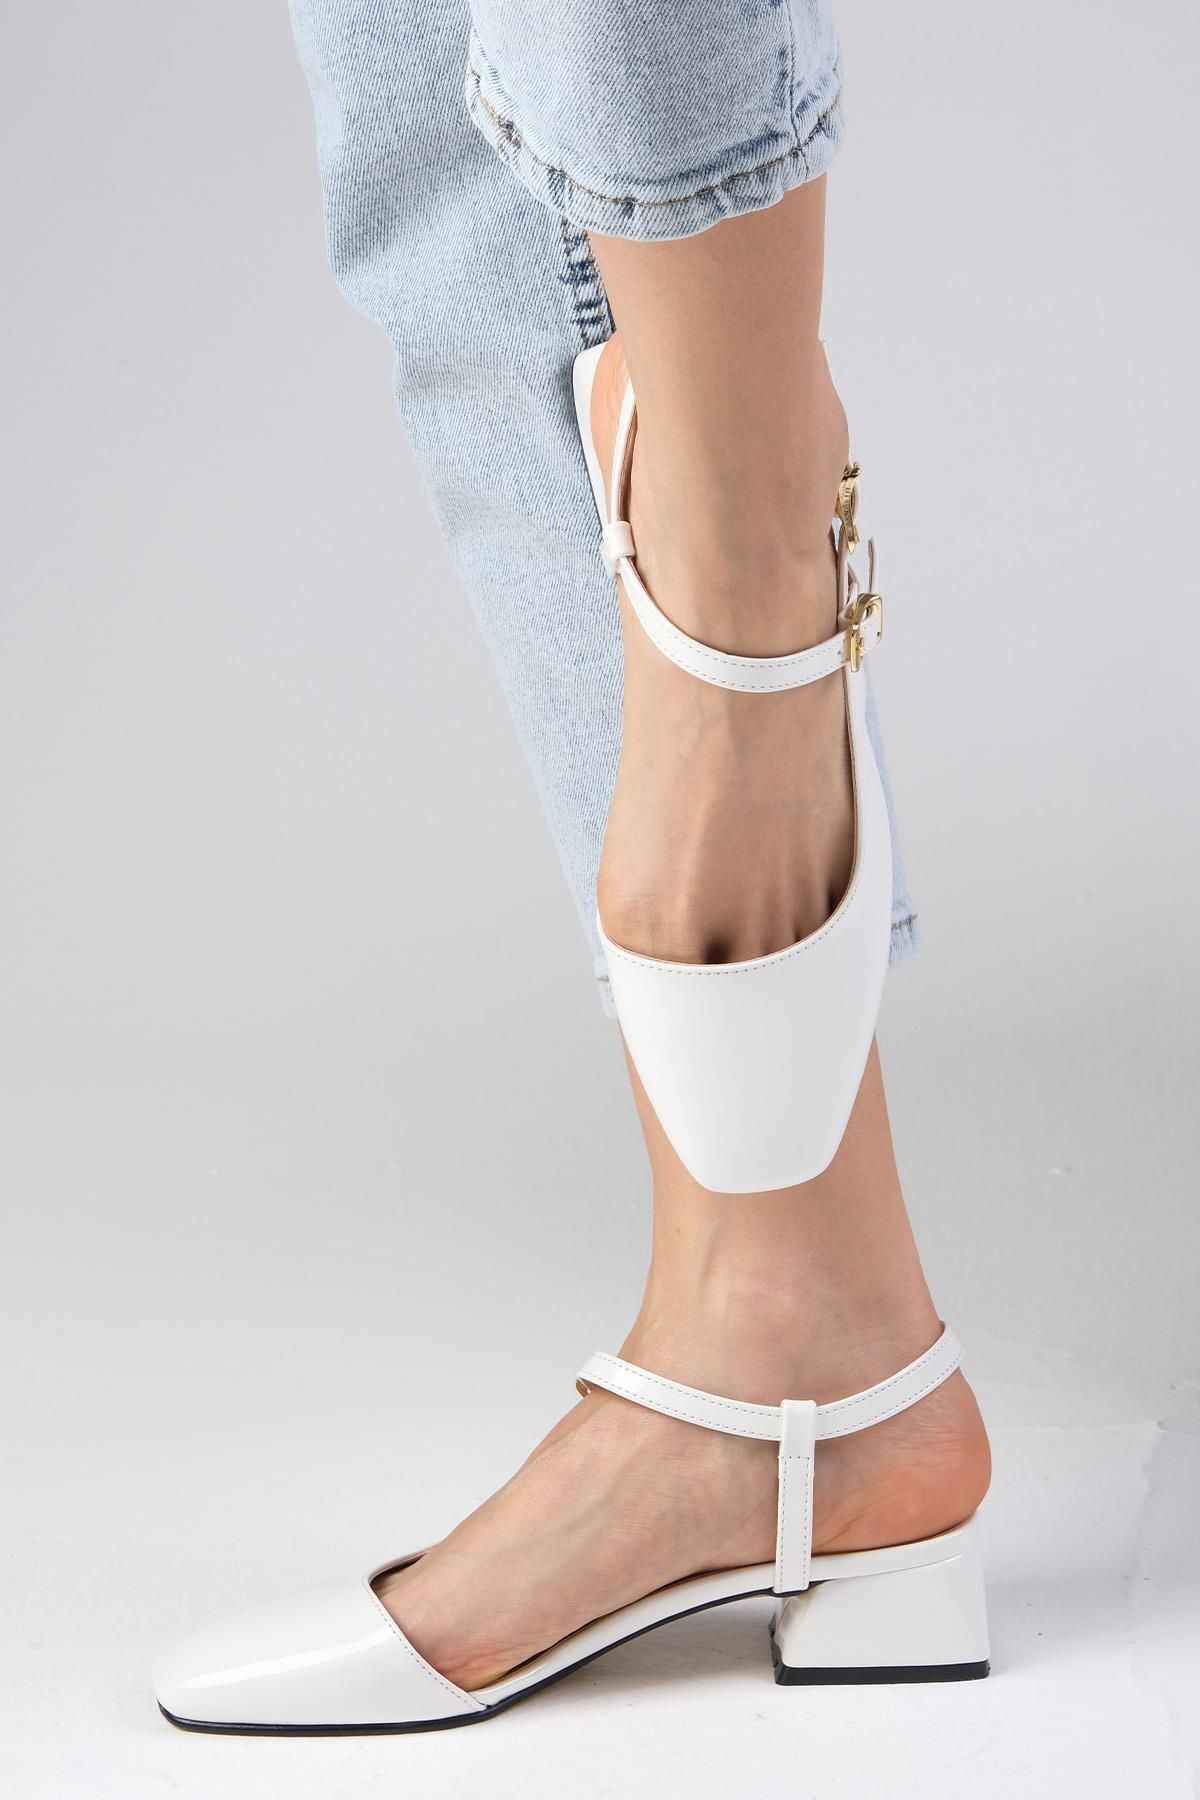 Mio Gusto Thea Beyaz Renk Rugan Arkası Açık Yandan Tokalı Küt Burunlu Kadın Kısa Topuklu Ayakkabı